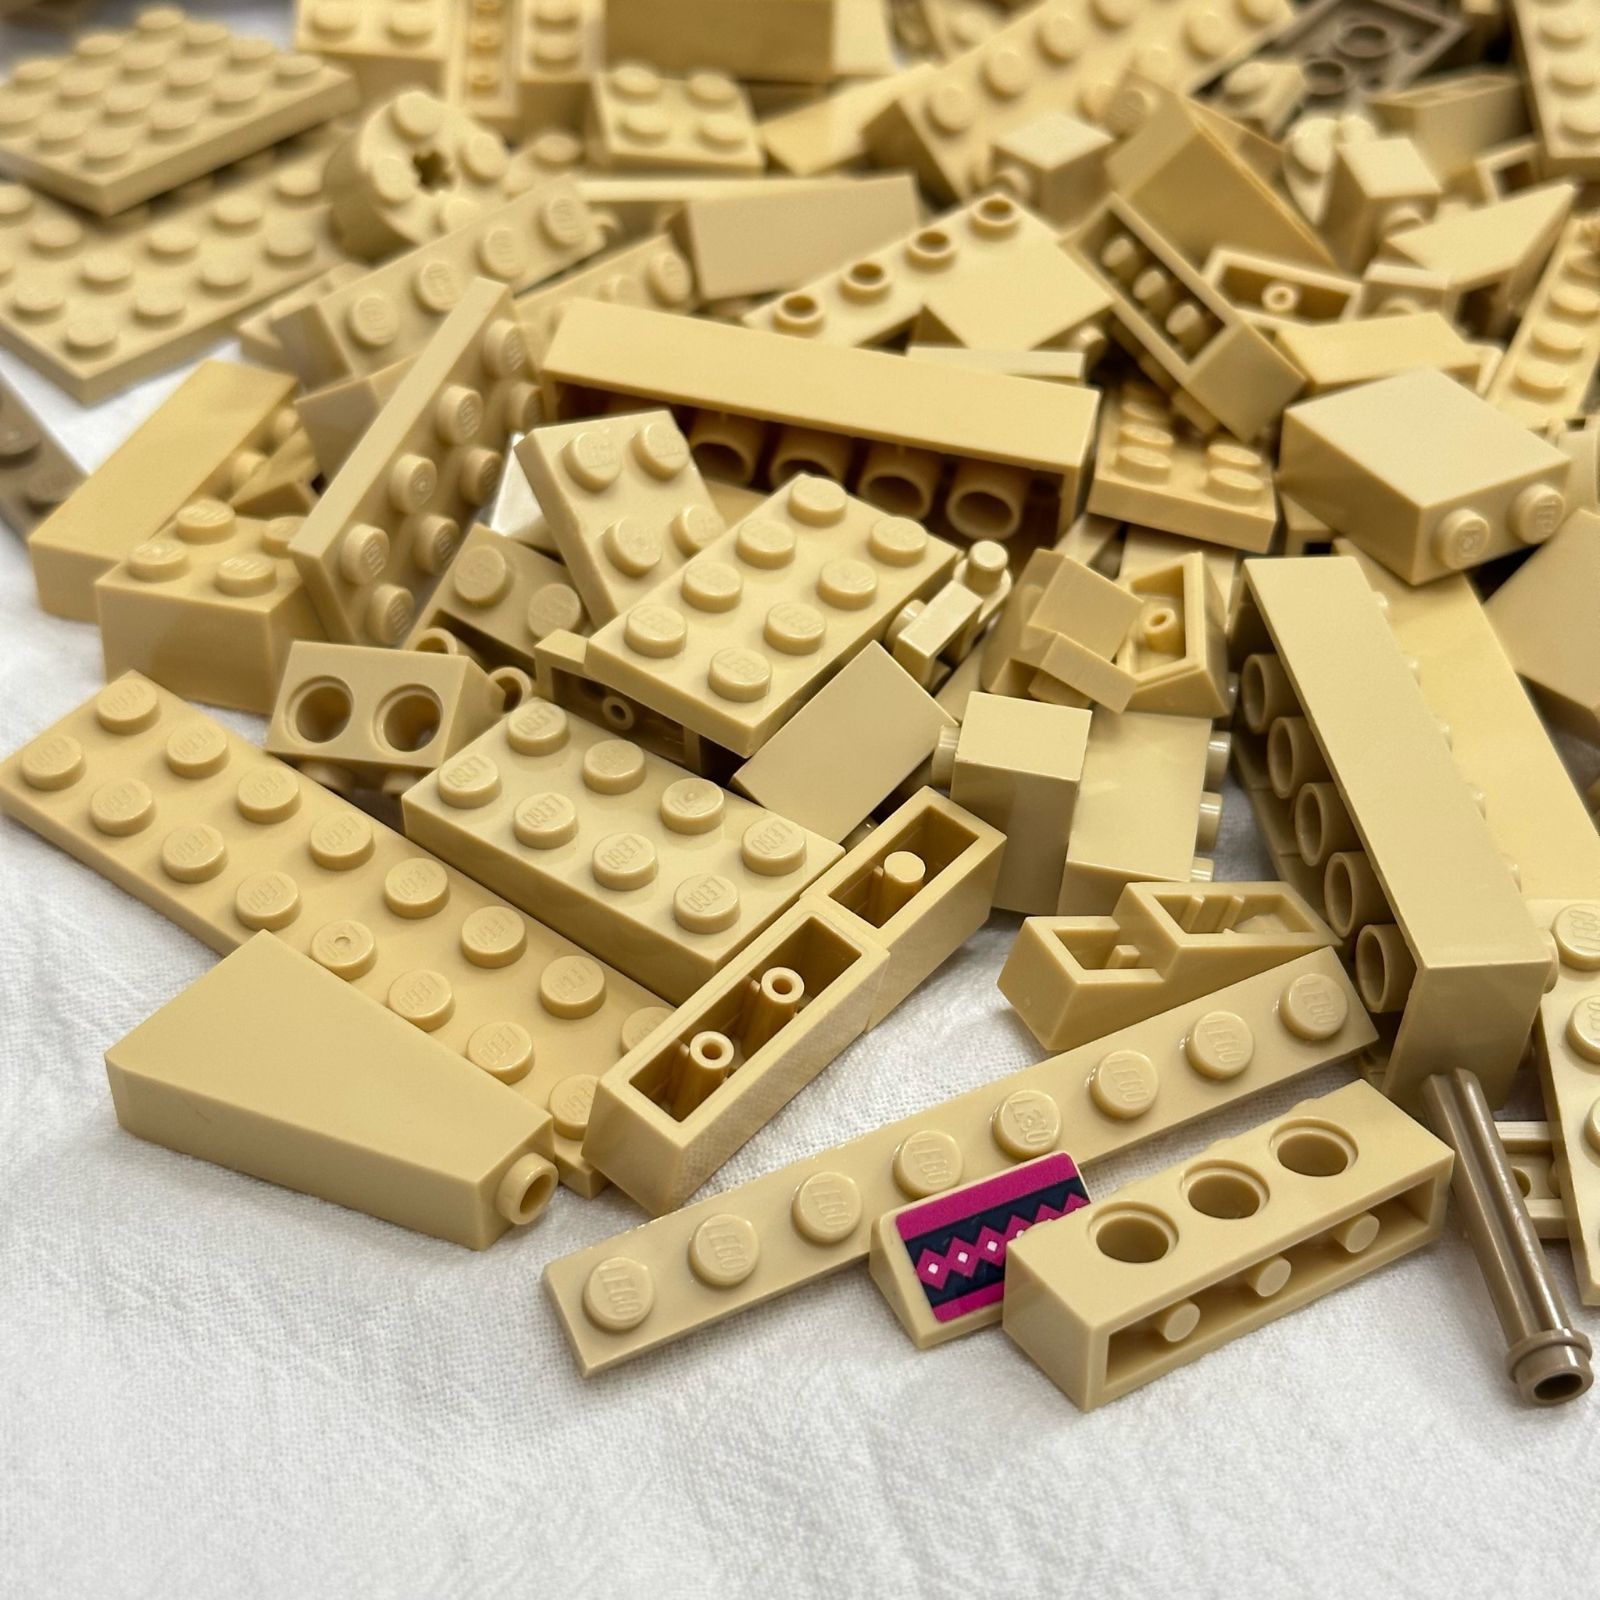 LEGO レゴ 茶 タン ブラウン系 中古 パーツ ブロック プレート